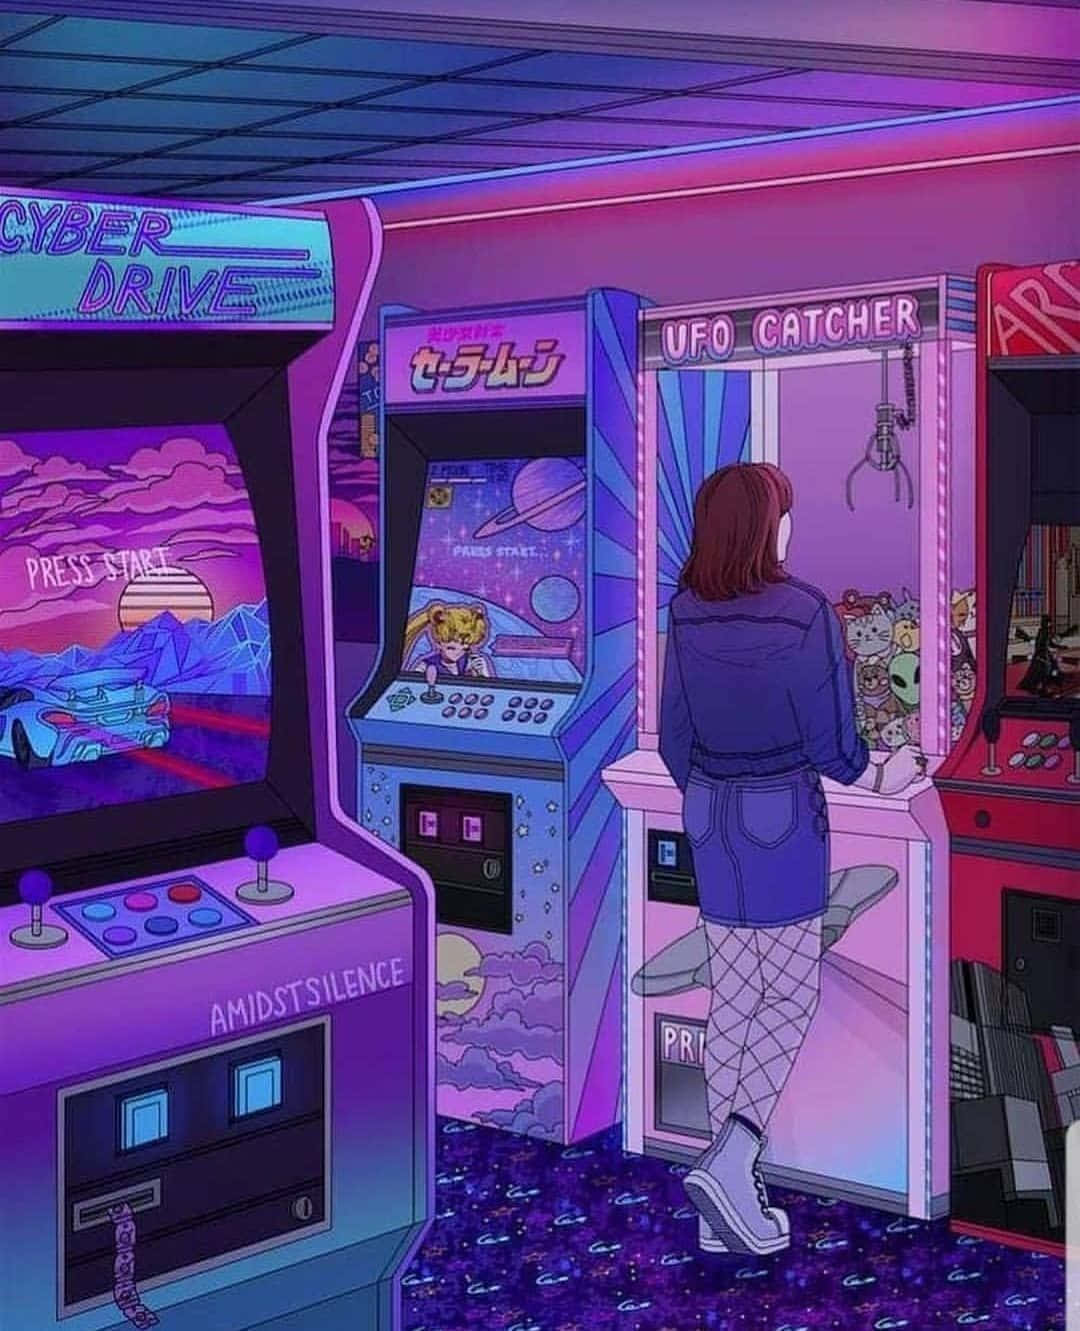 Tauchensie Ein In Eine Welt Voller Nostalgie Mit Arcade-ästhetik Ein. Wallpaper